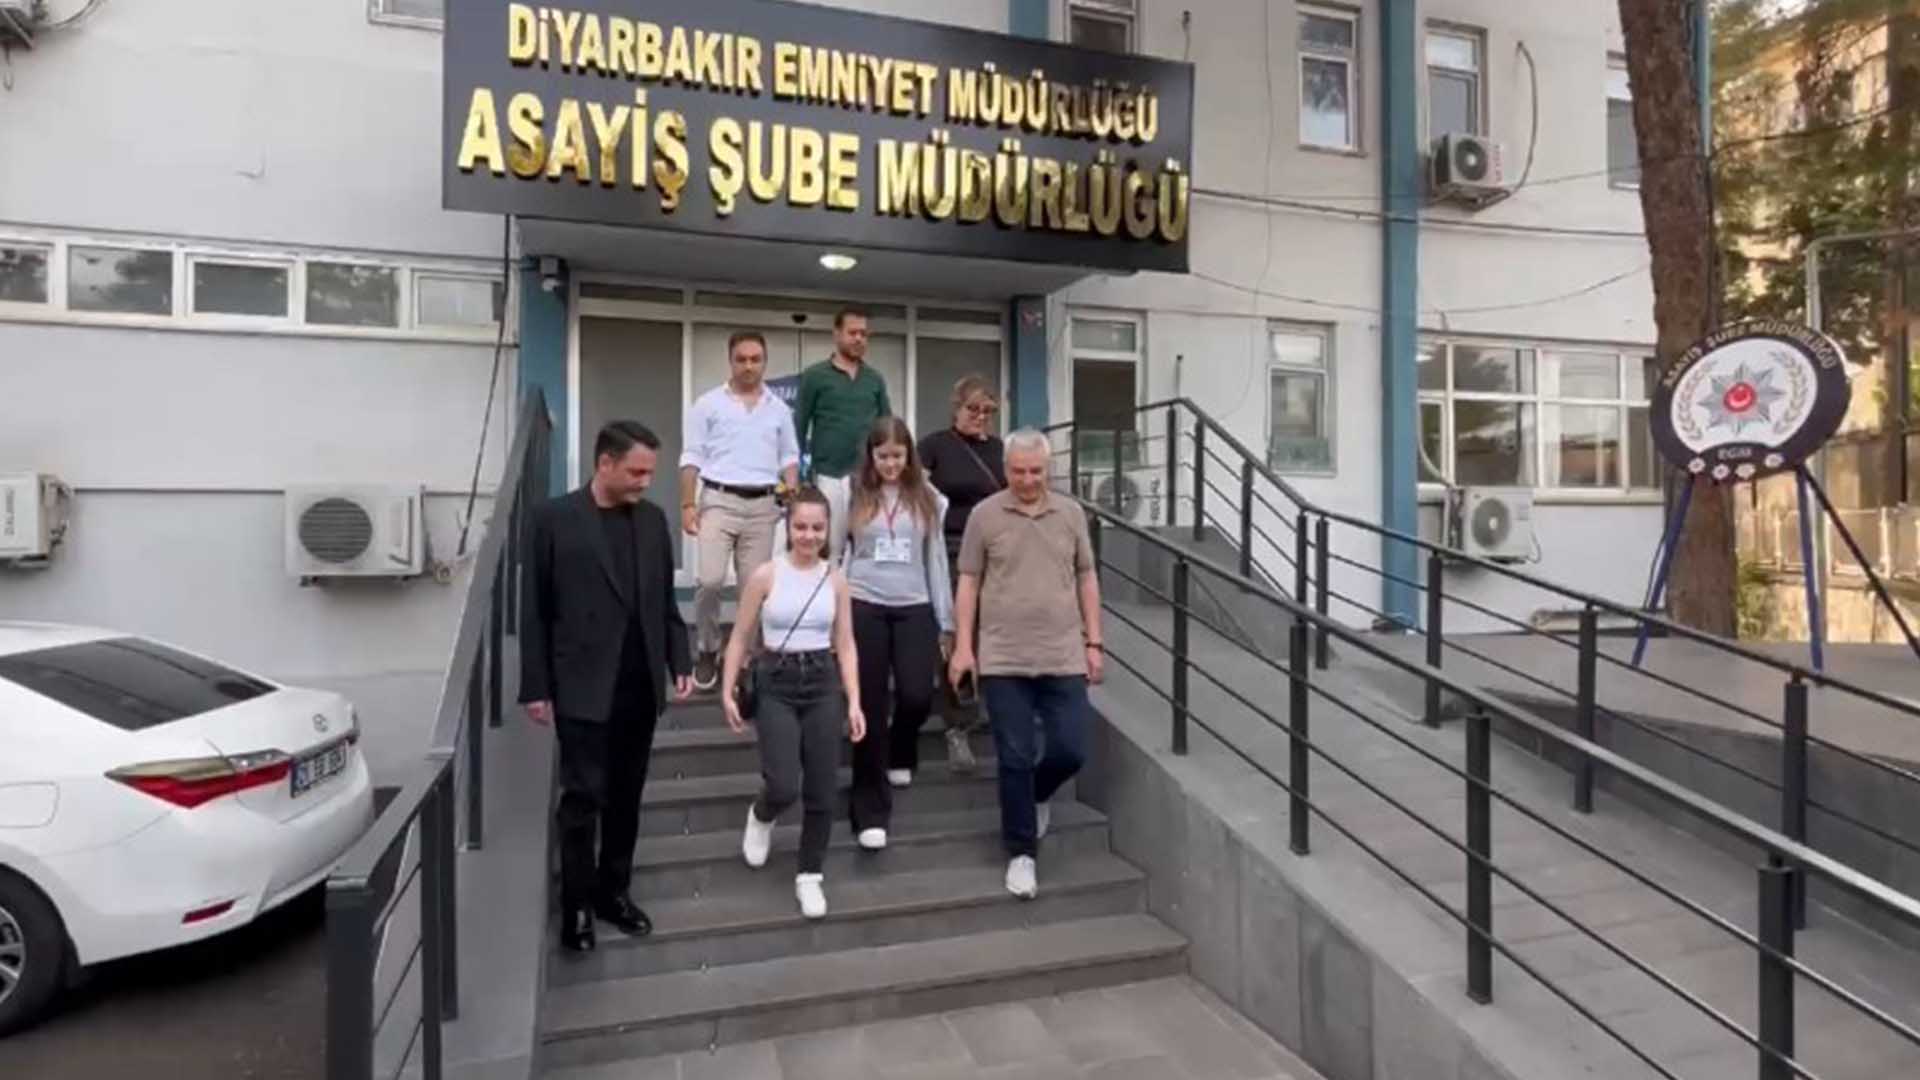 Diyarbakır’da Hırsızların Turist Halayı 3